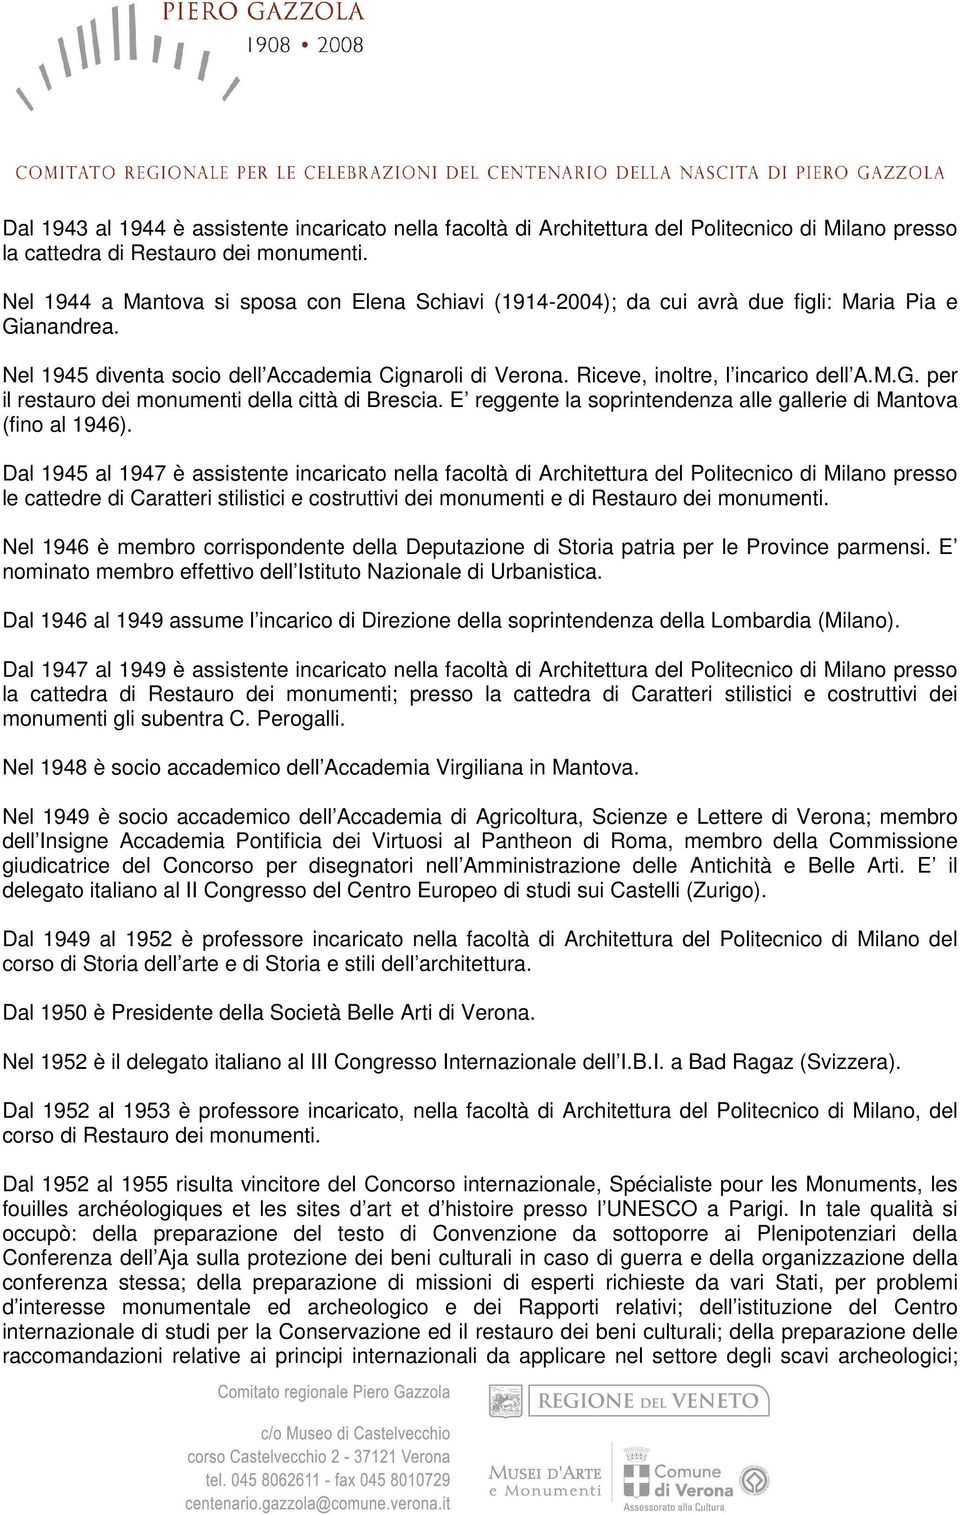 M.G. per il restauro dei monumenti della città di Brescia. E reggente la soprintendenza alle gallerie di Mantova (fino al 1946).